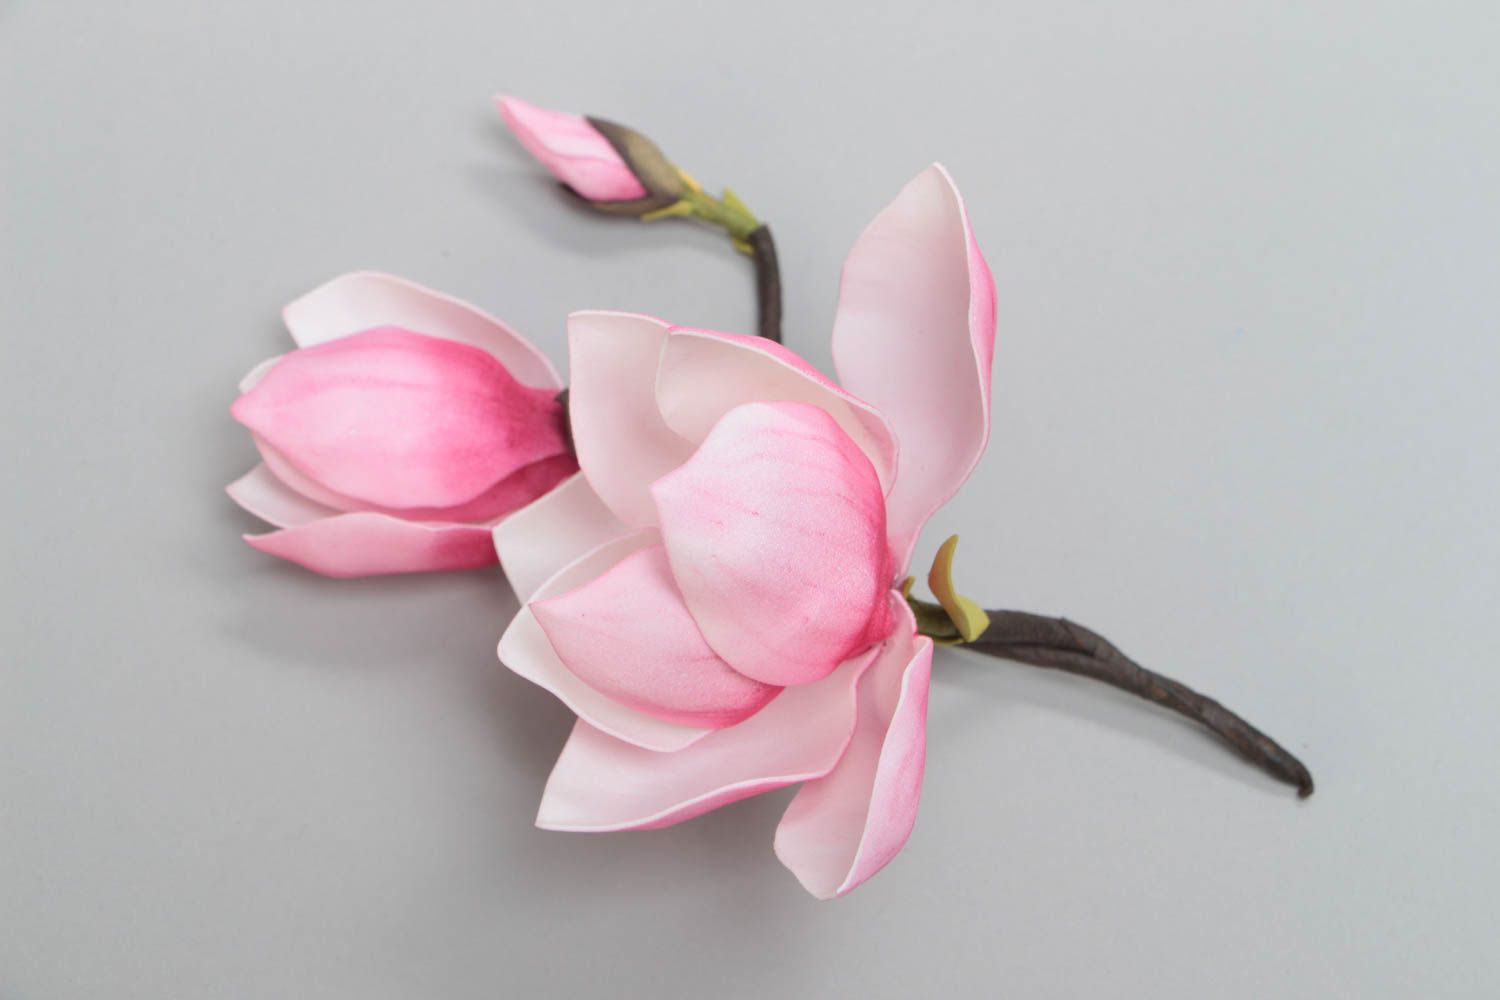 Розовая магнолия из фоамирана красивый цветок для декора дома ручной работы фото 2